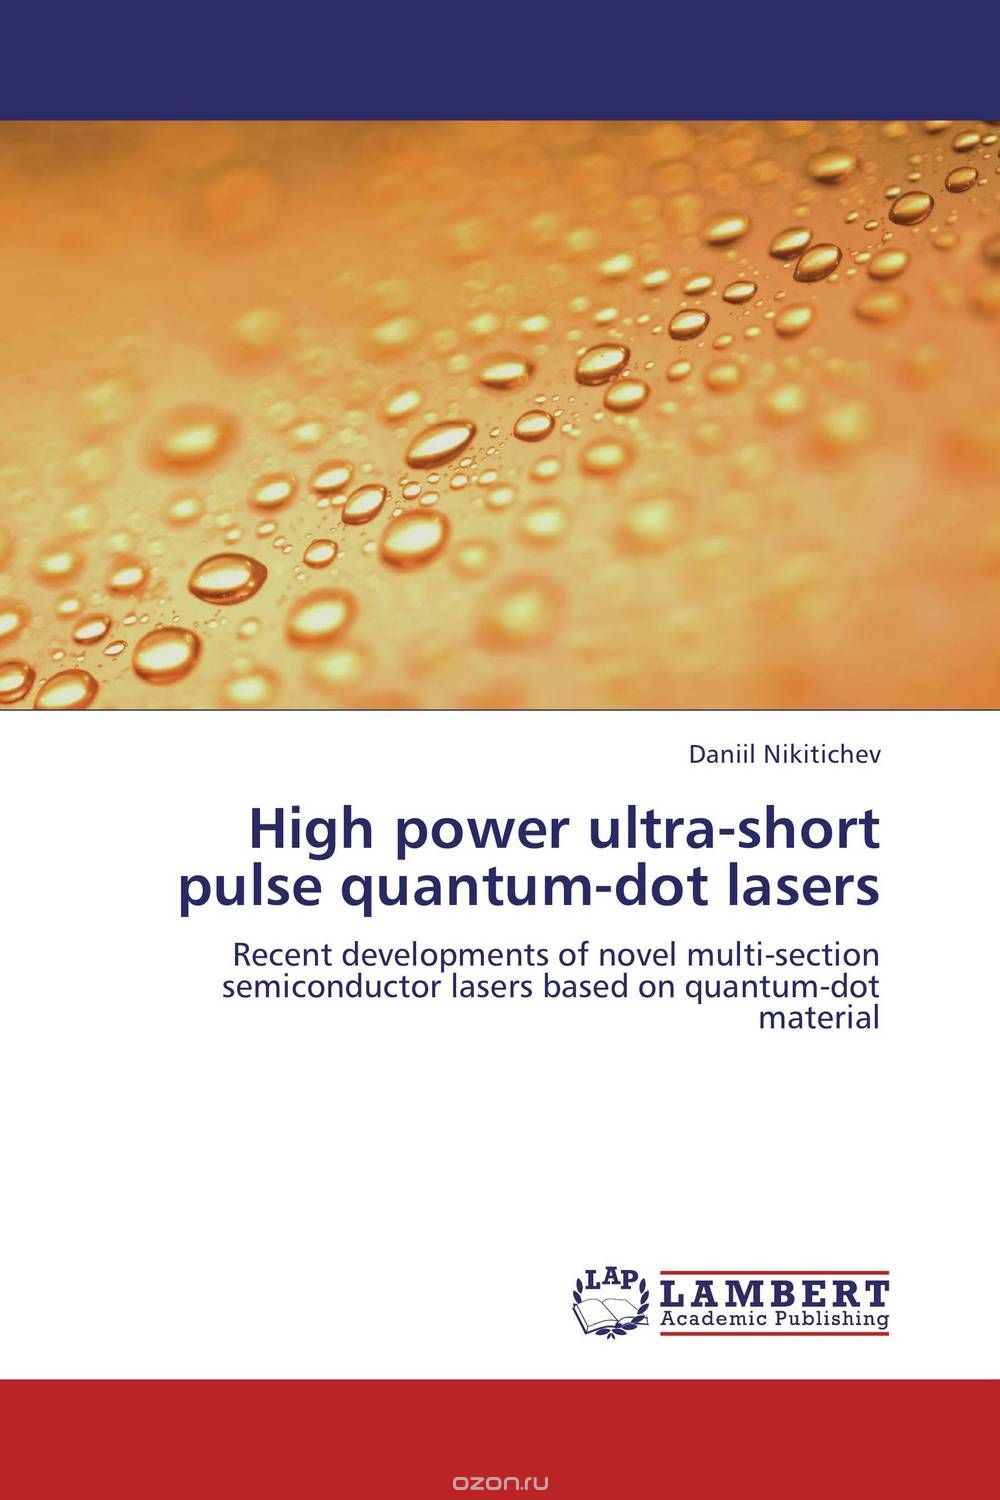 Скачать книгу "High power ultra-short pulse quantum-dot lasers"